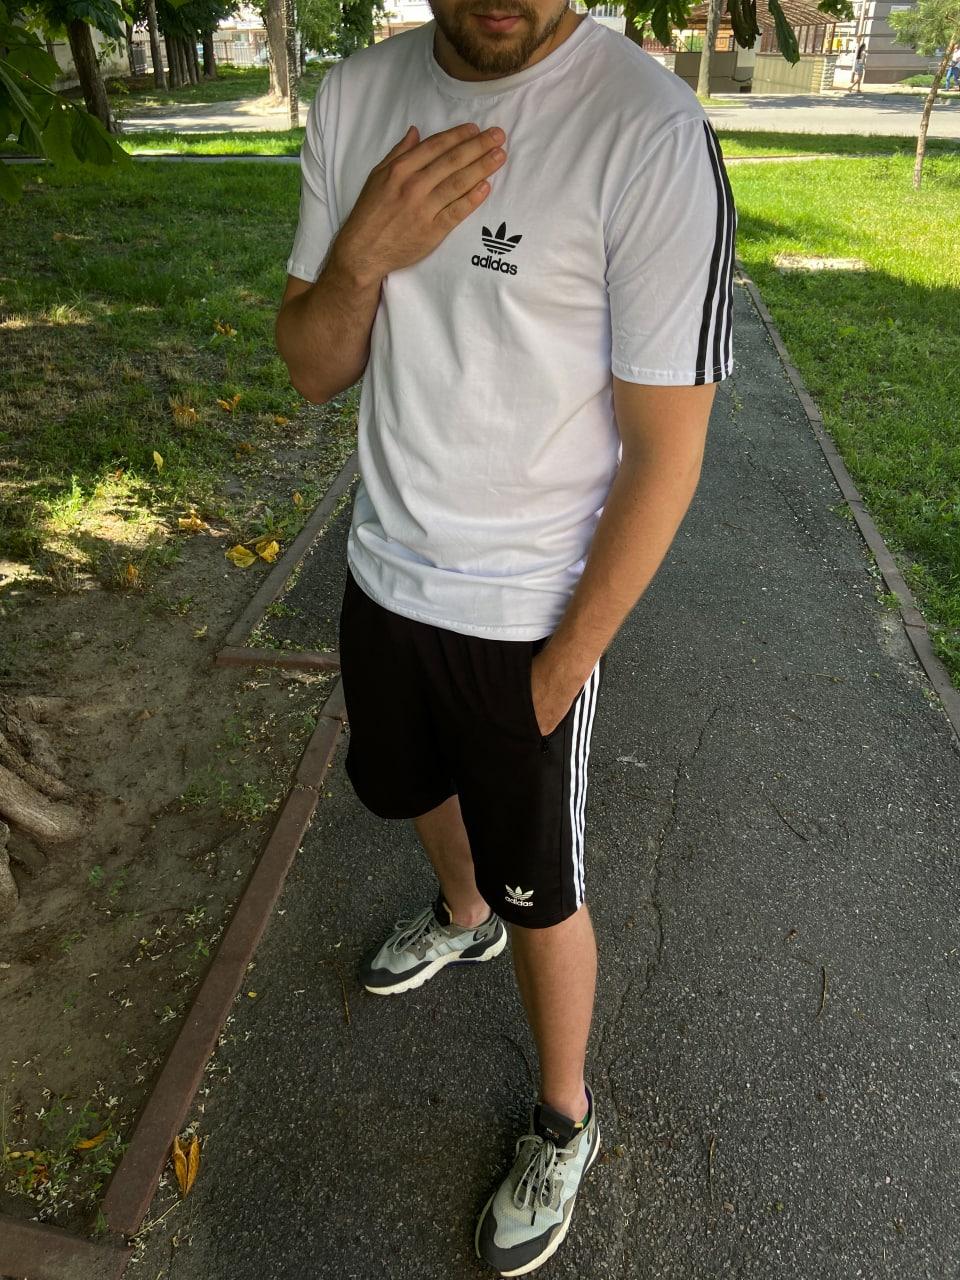 Чоловічий літній костюм Adidas білий із чорним футболка та шорти Адідас і шкарпетки в подарунок